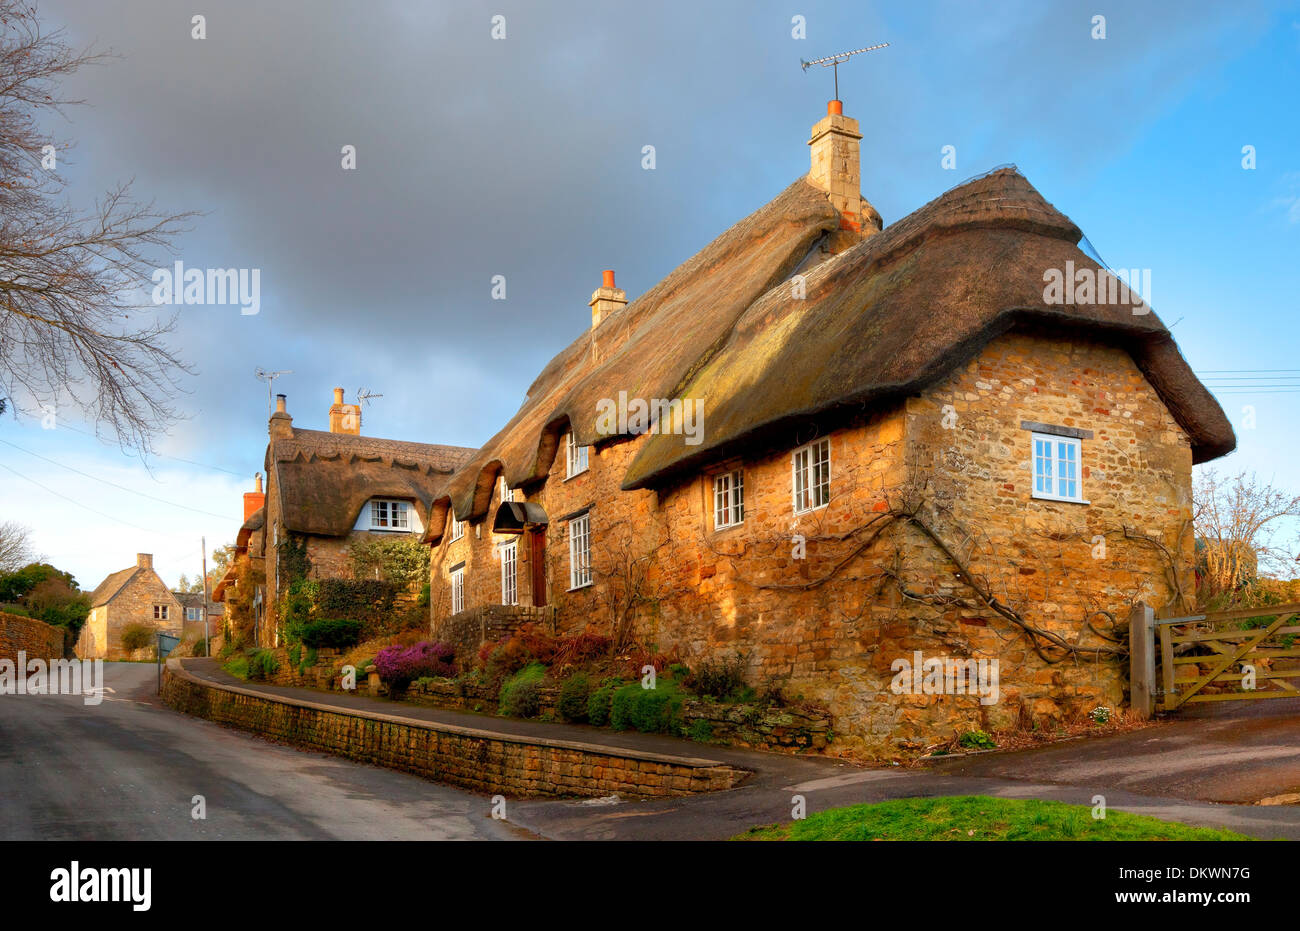 Cotwold thatched cottage en pierre, Ebrington, Gloucestershire, Angleterre. Banque D'Images